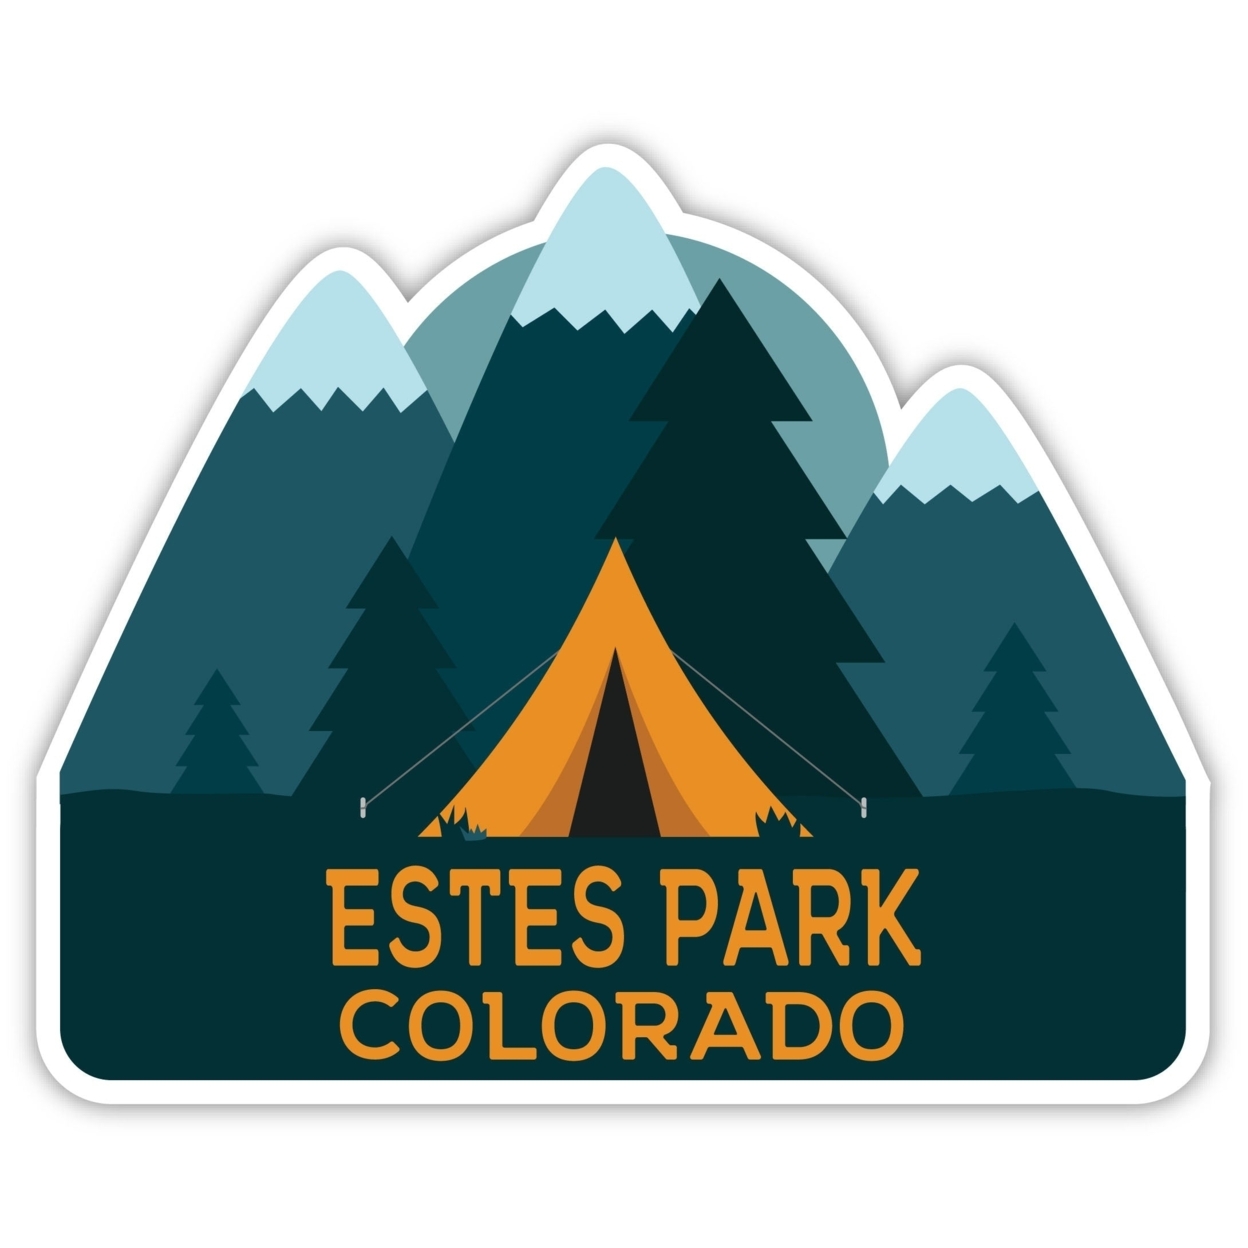 Estes Park Colorado Souvenir Decorative Stickers (Choose Theme And Size) - Single Unit, 8-Inch, Great Outdoors